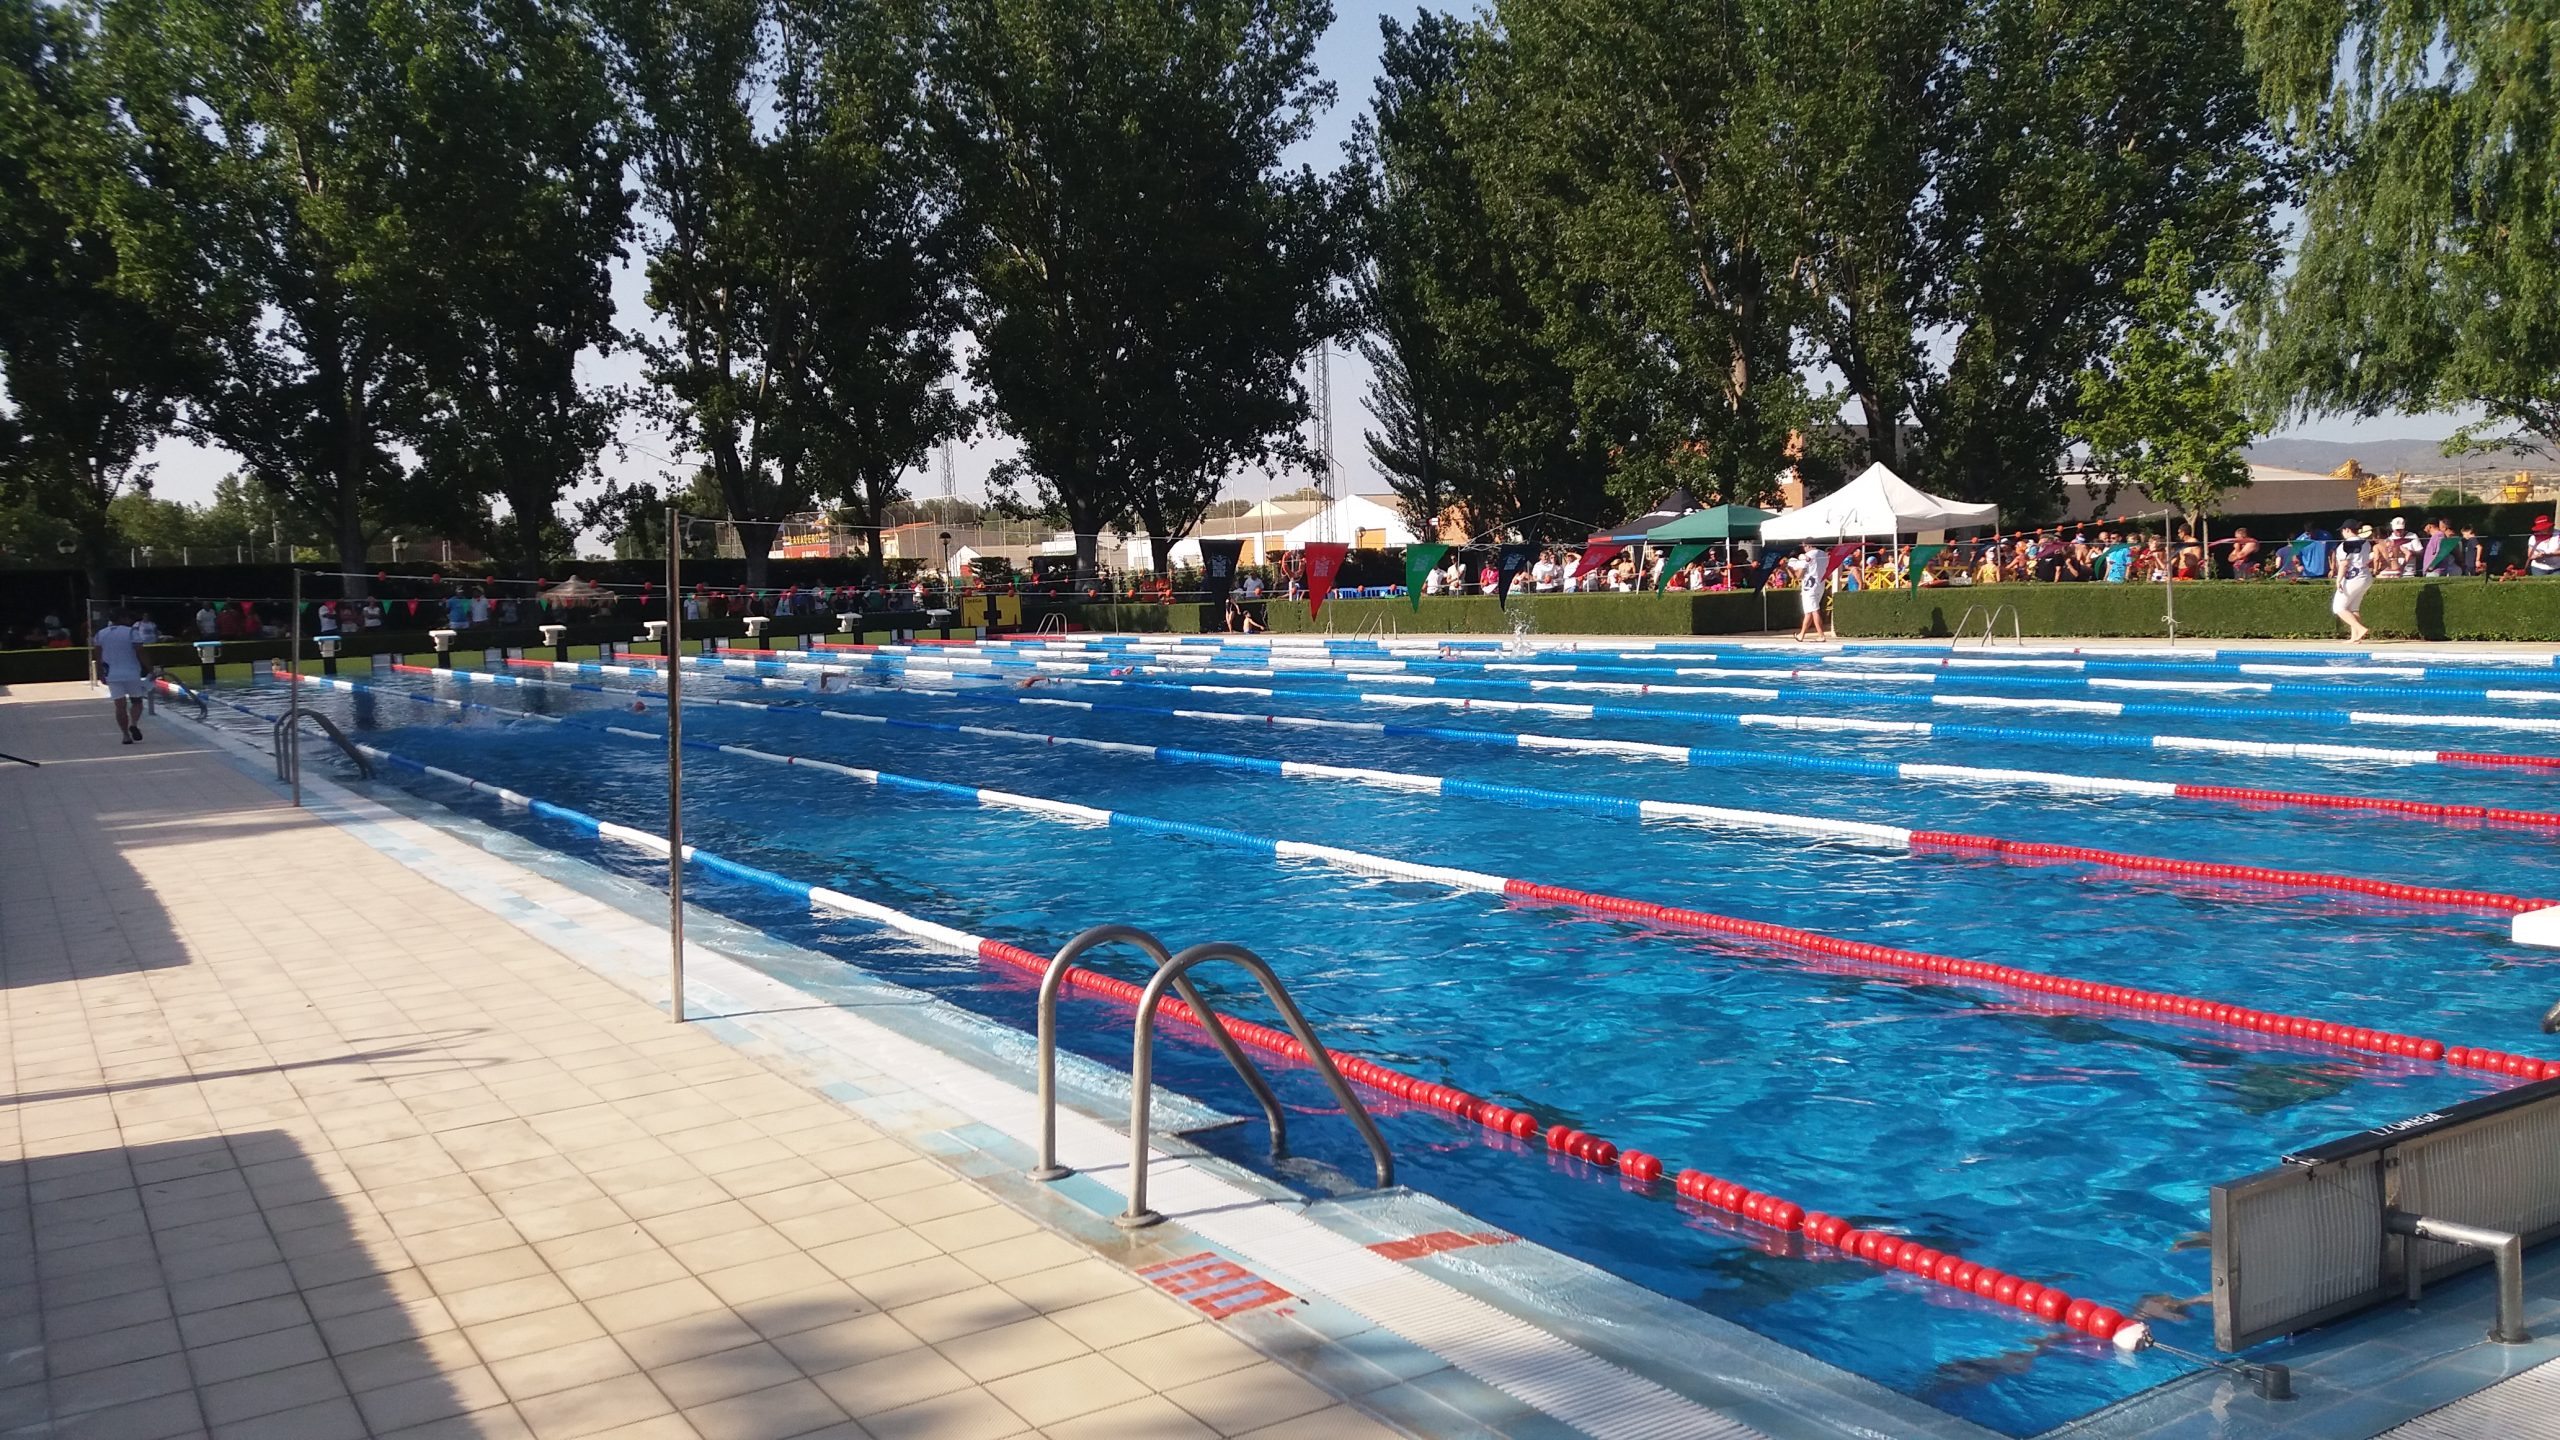 La competición regional de natación finaliza la temporada en Almansa con el Campeonato Regional de Natación Infantil, Junior y Absoluto de Verano